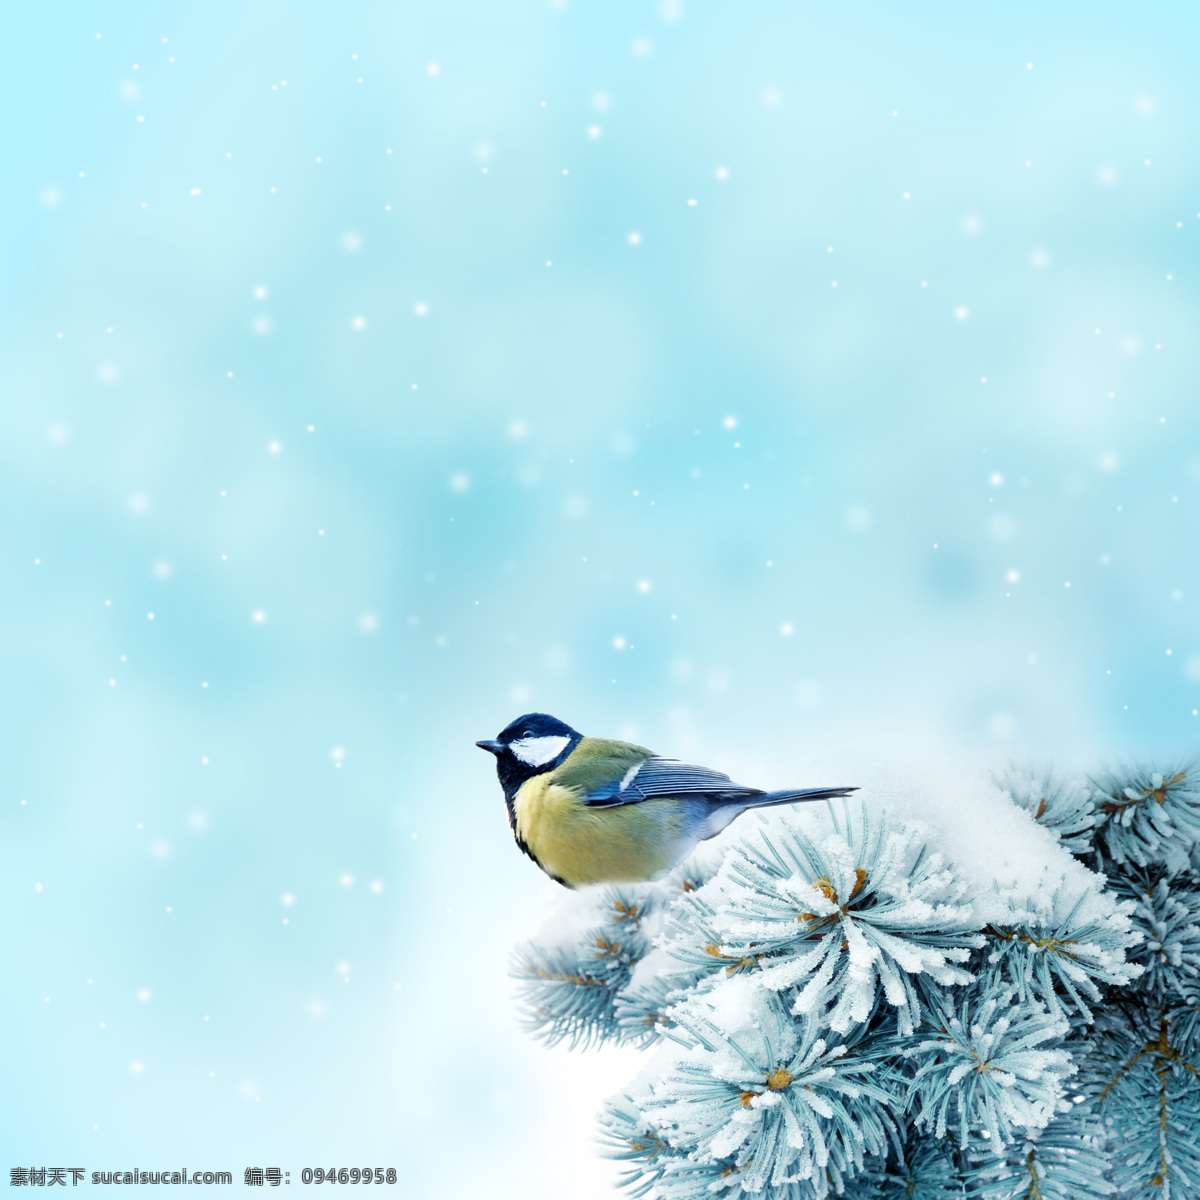 冬季 雪景 松枝 上 黄鹂 高清 雪花 高清图片 设计素材 尺寸 像素